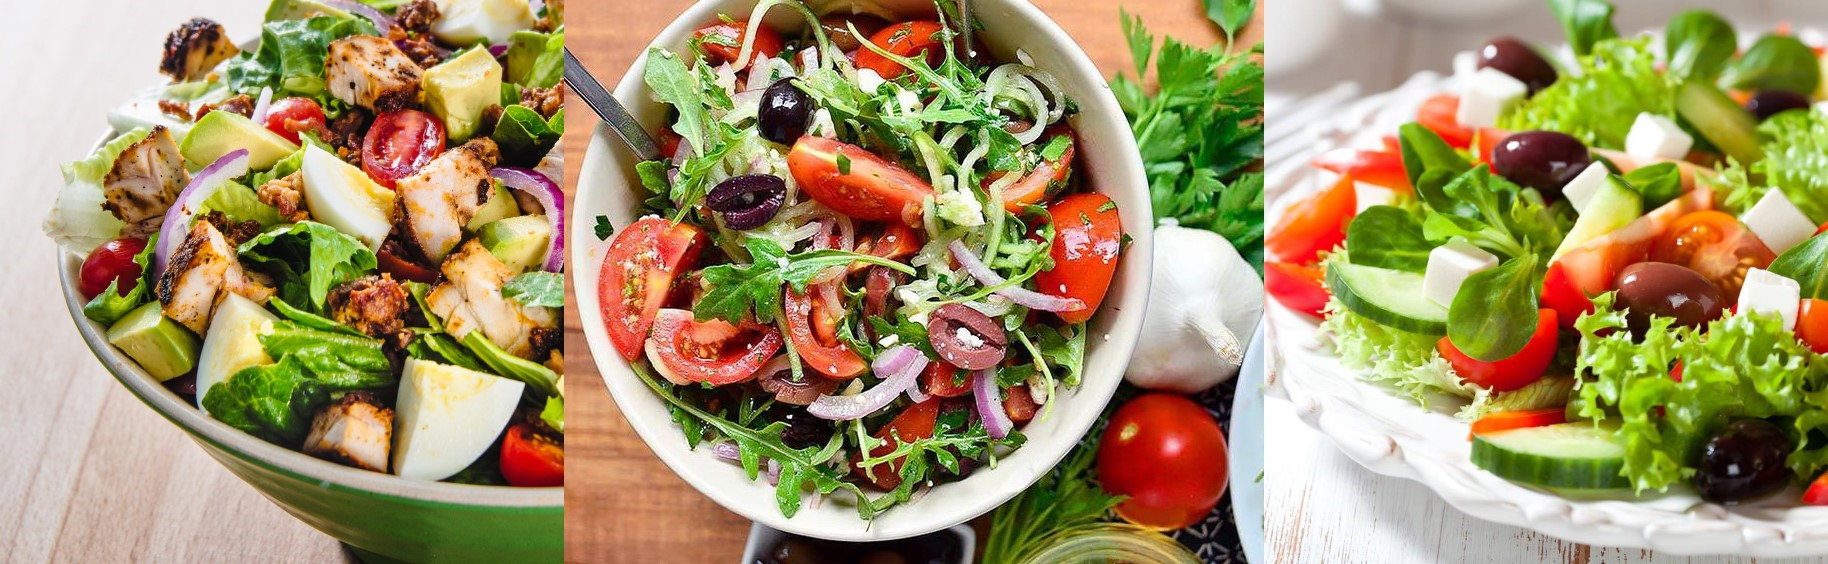 Vegetable Salad Spinner 